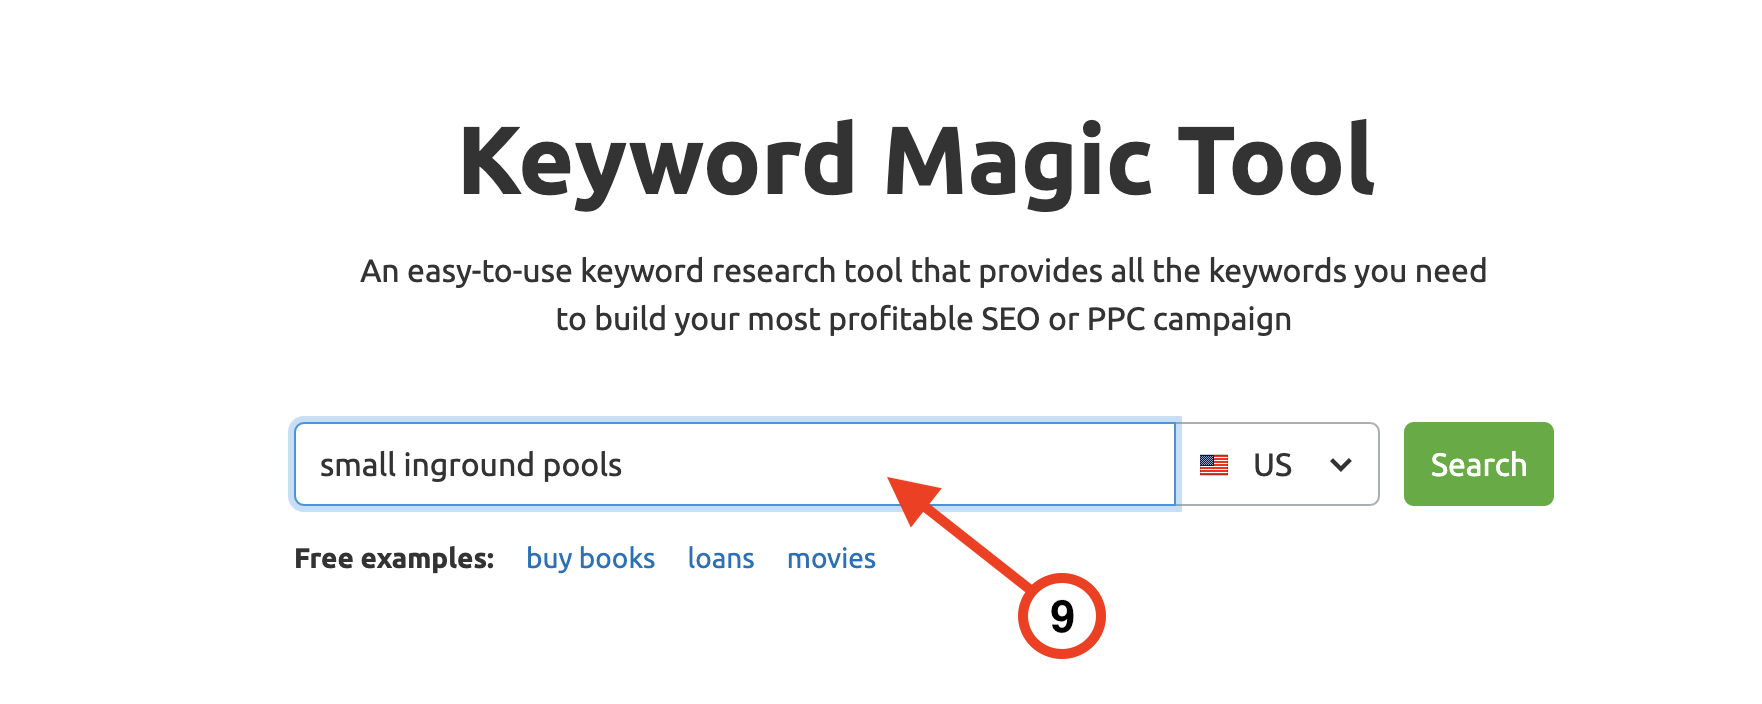 Keyword Magic Tool seed keyword